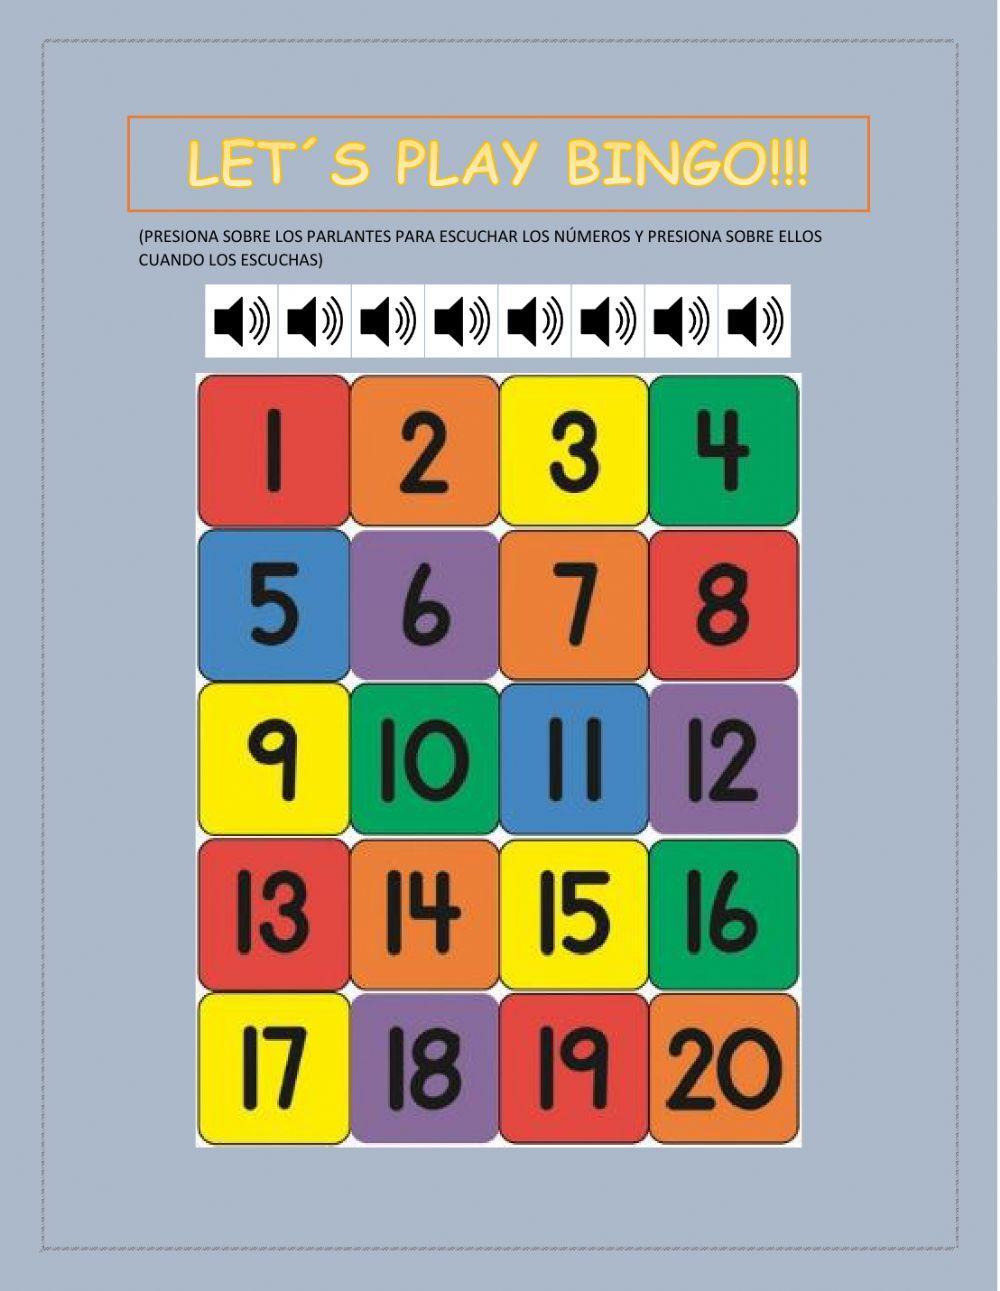 Let-s play bingo!